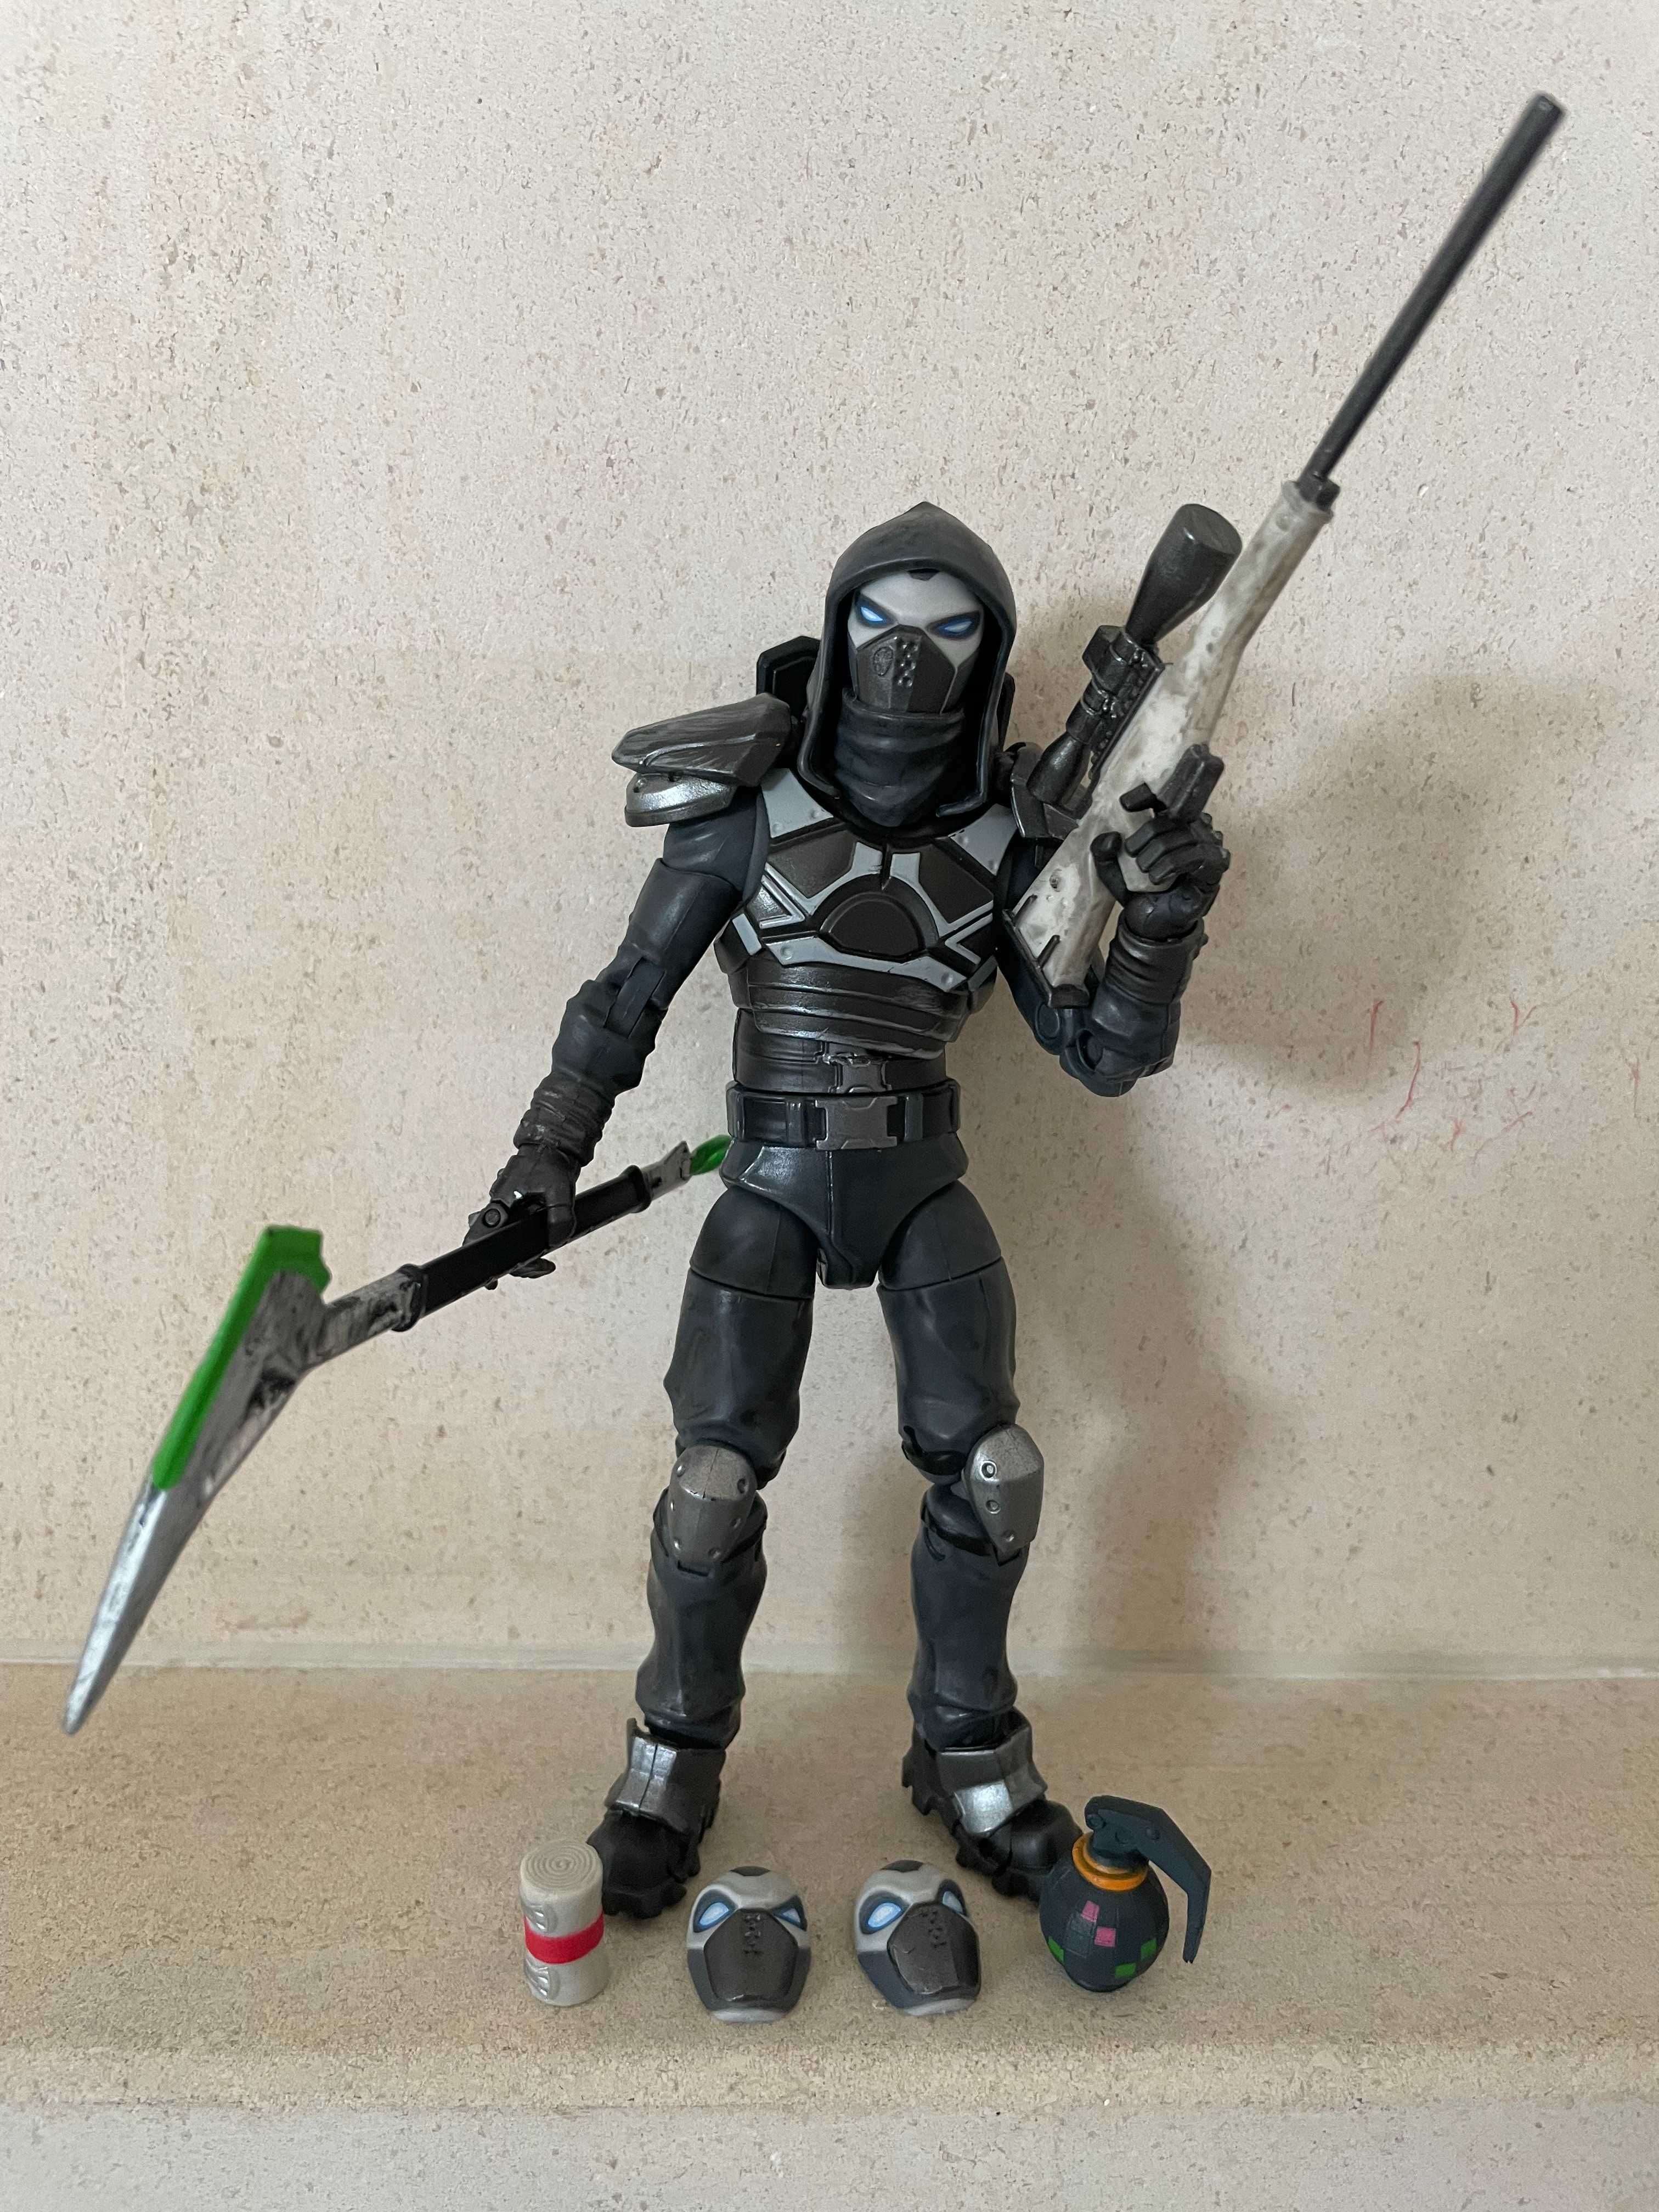 Jazwares Fortnite Legendary Series Enforcer - 6 inch Action Figure